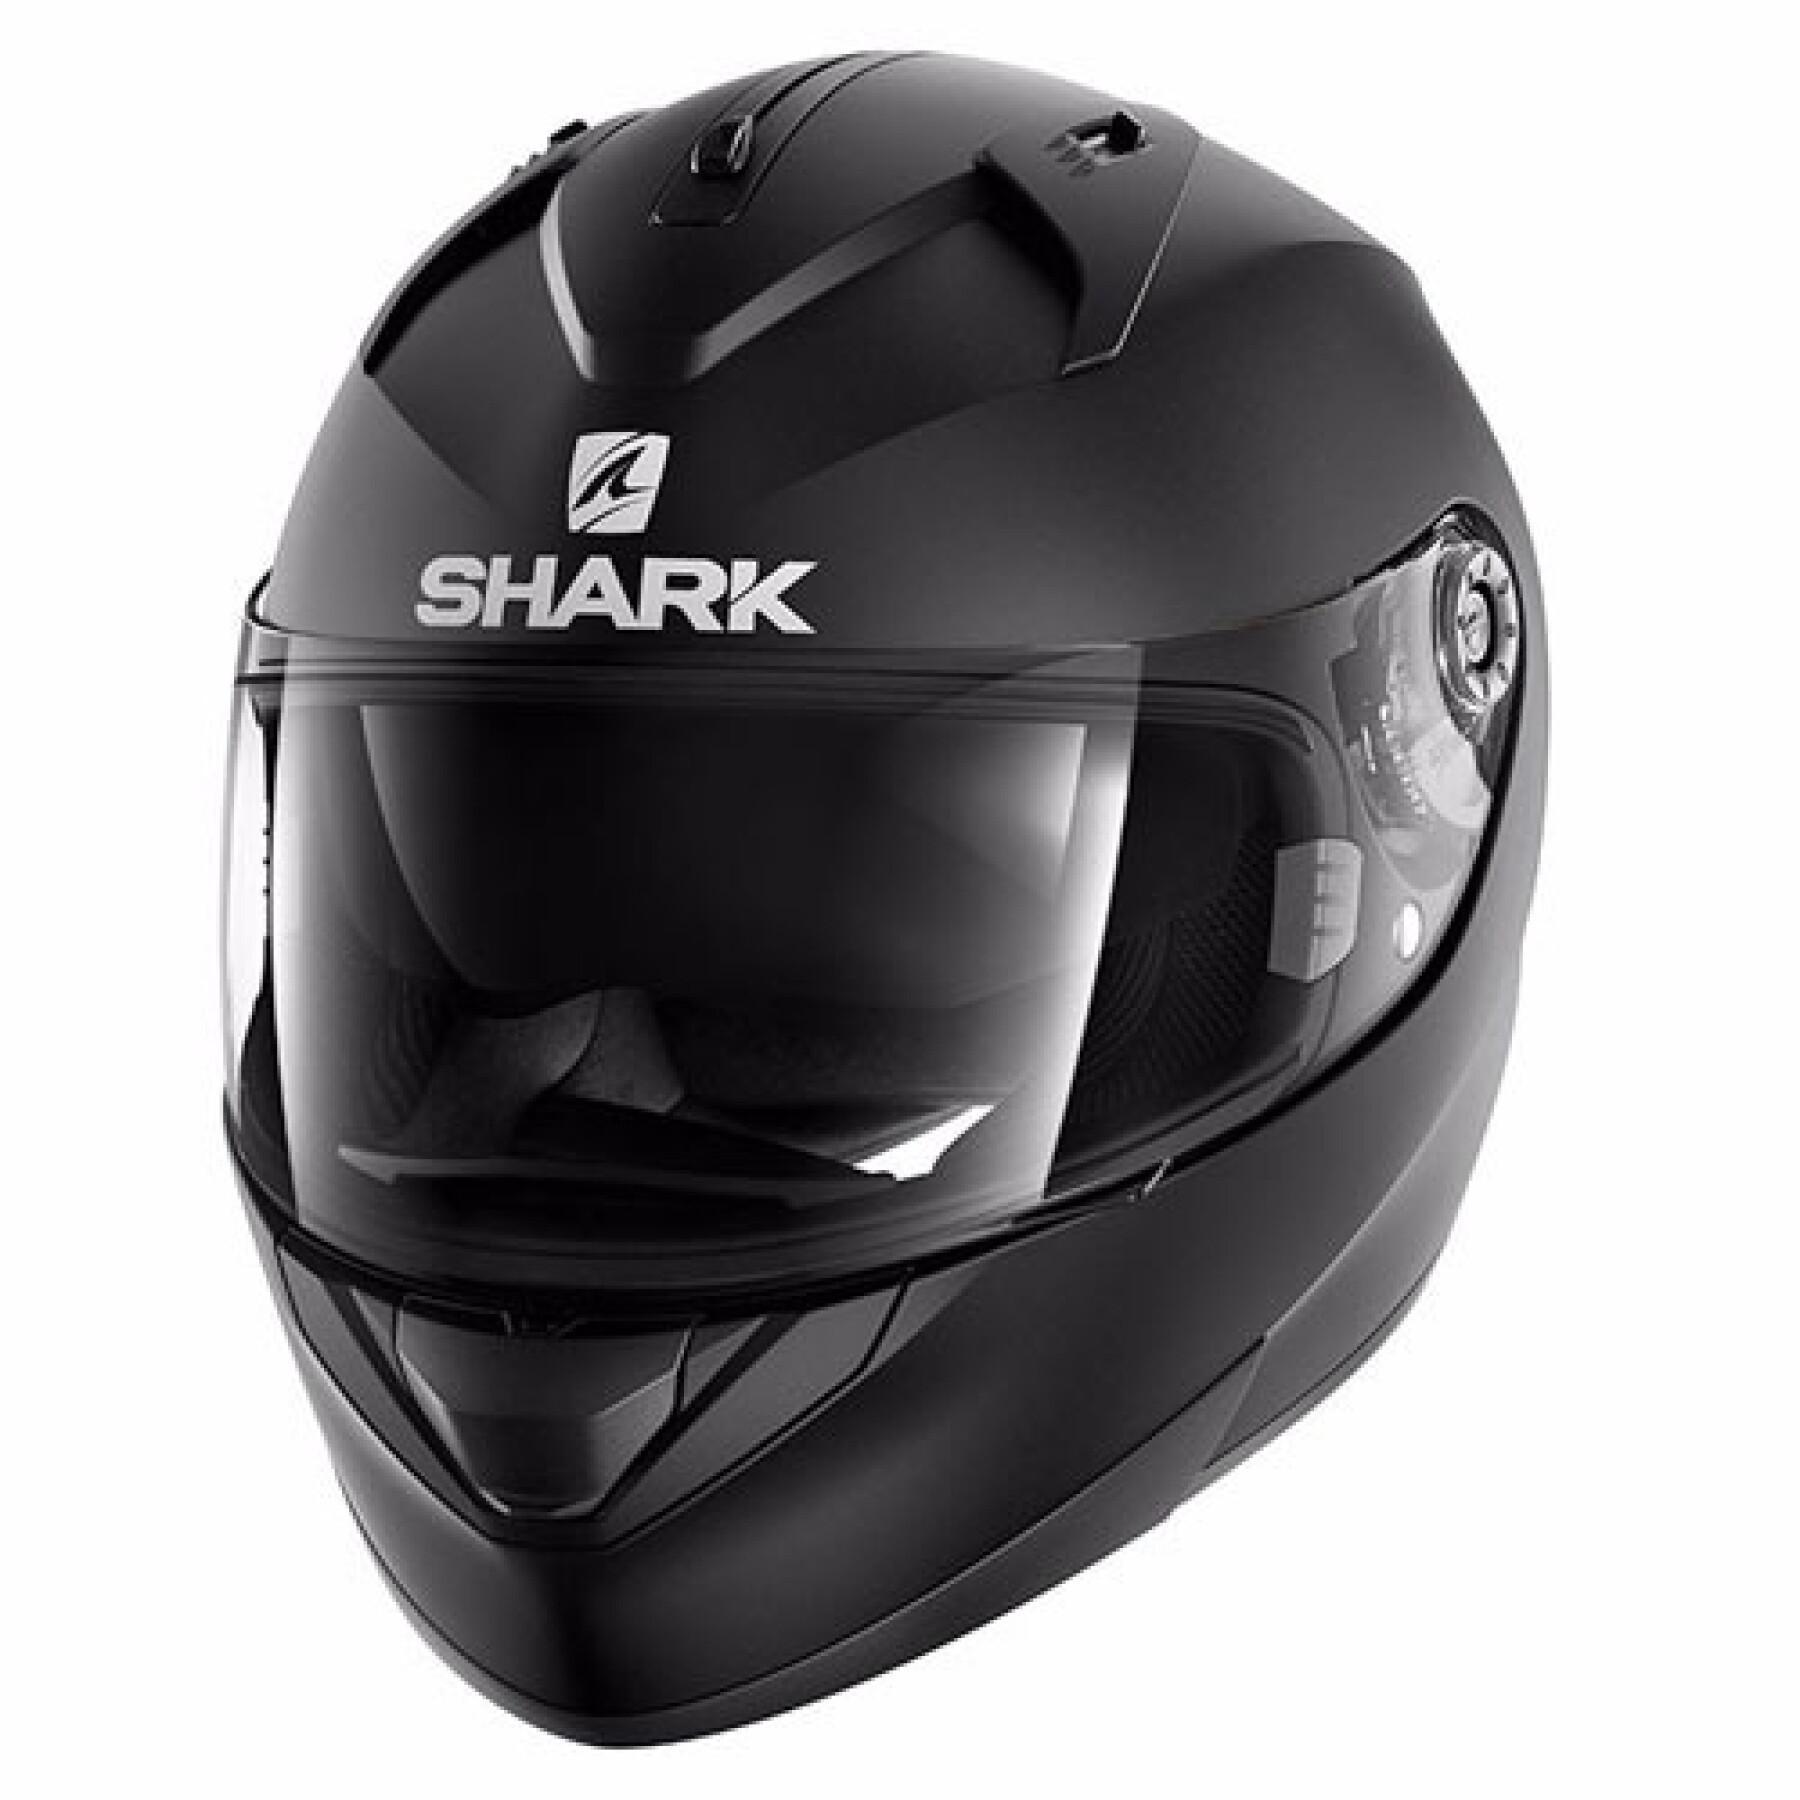 Full face motorcycle helmet Shark ridill blank